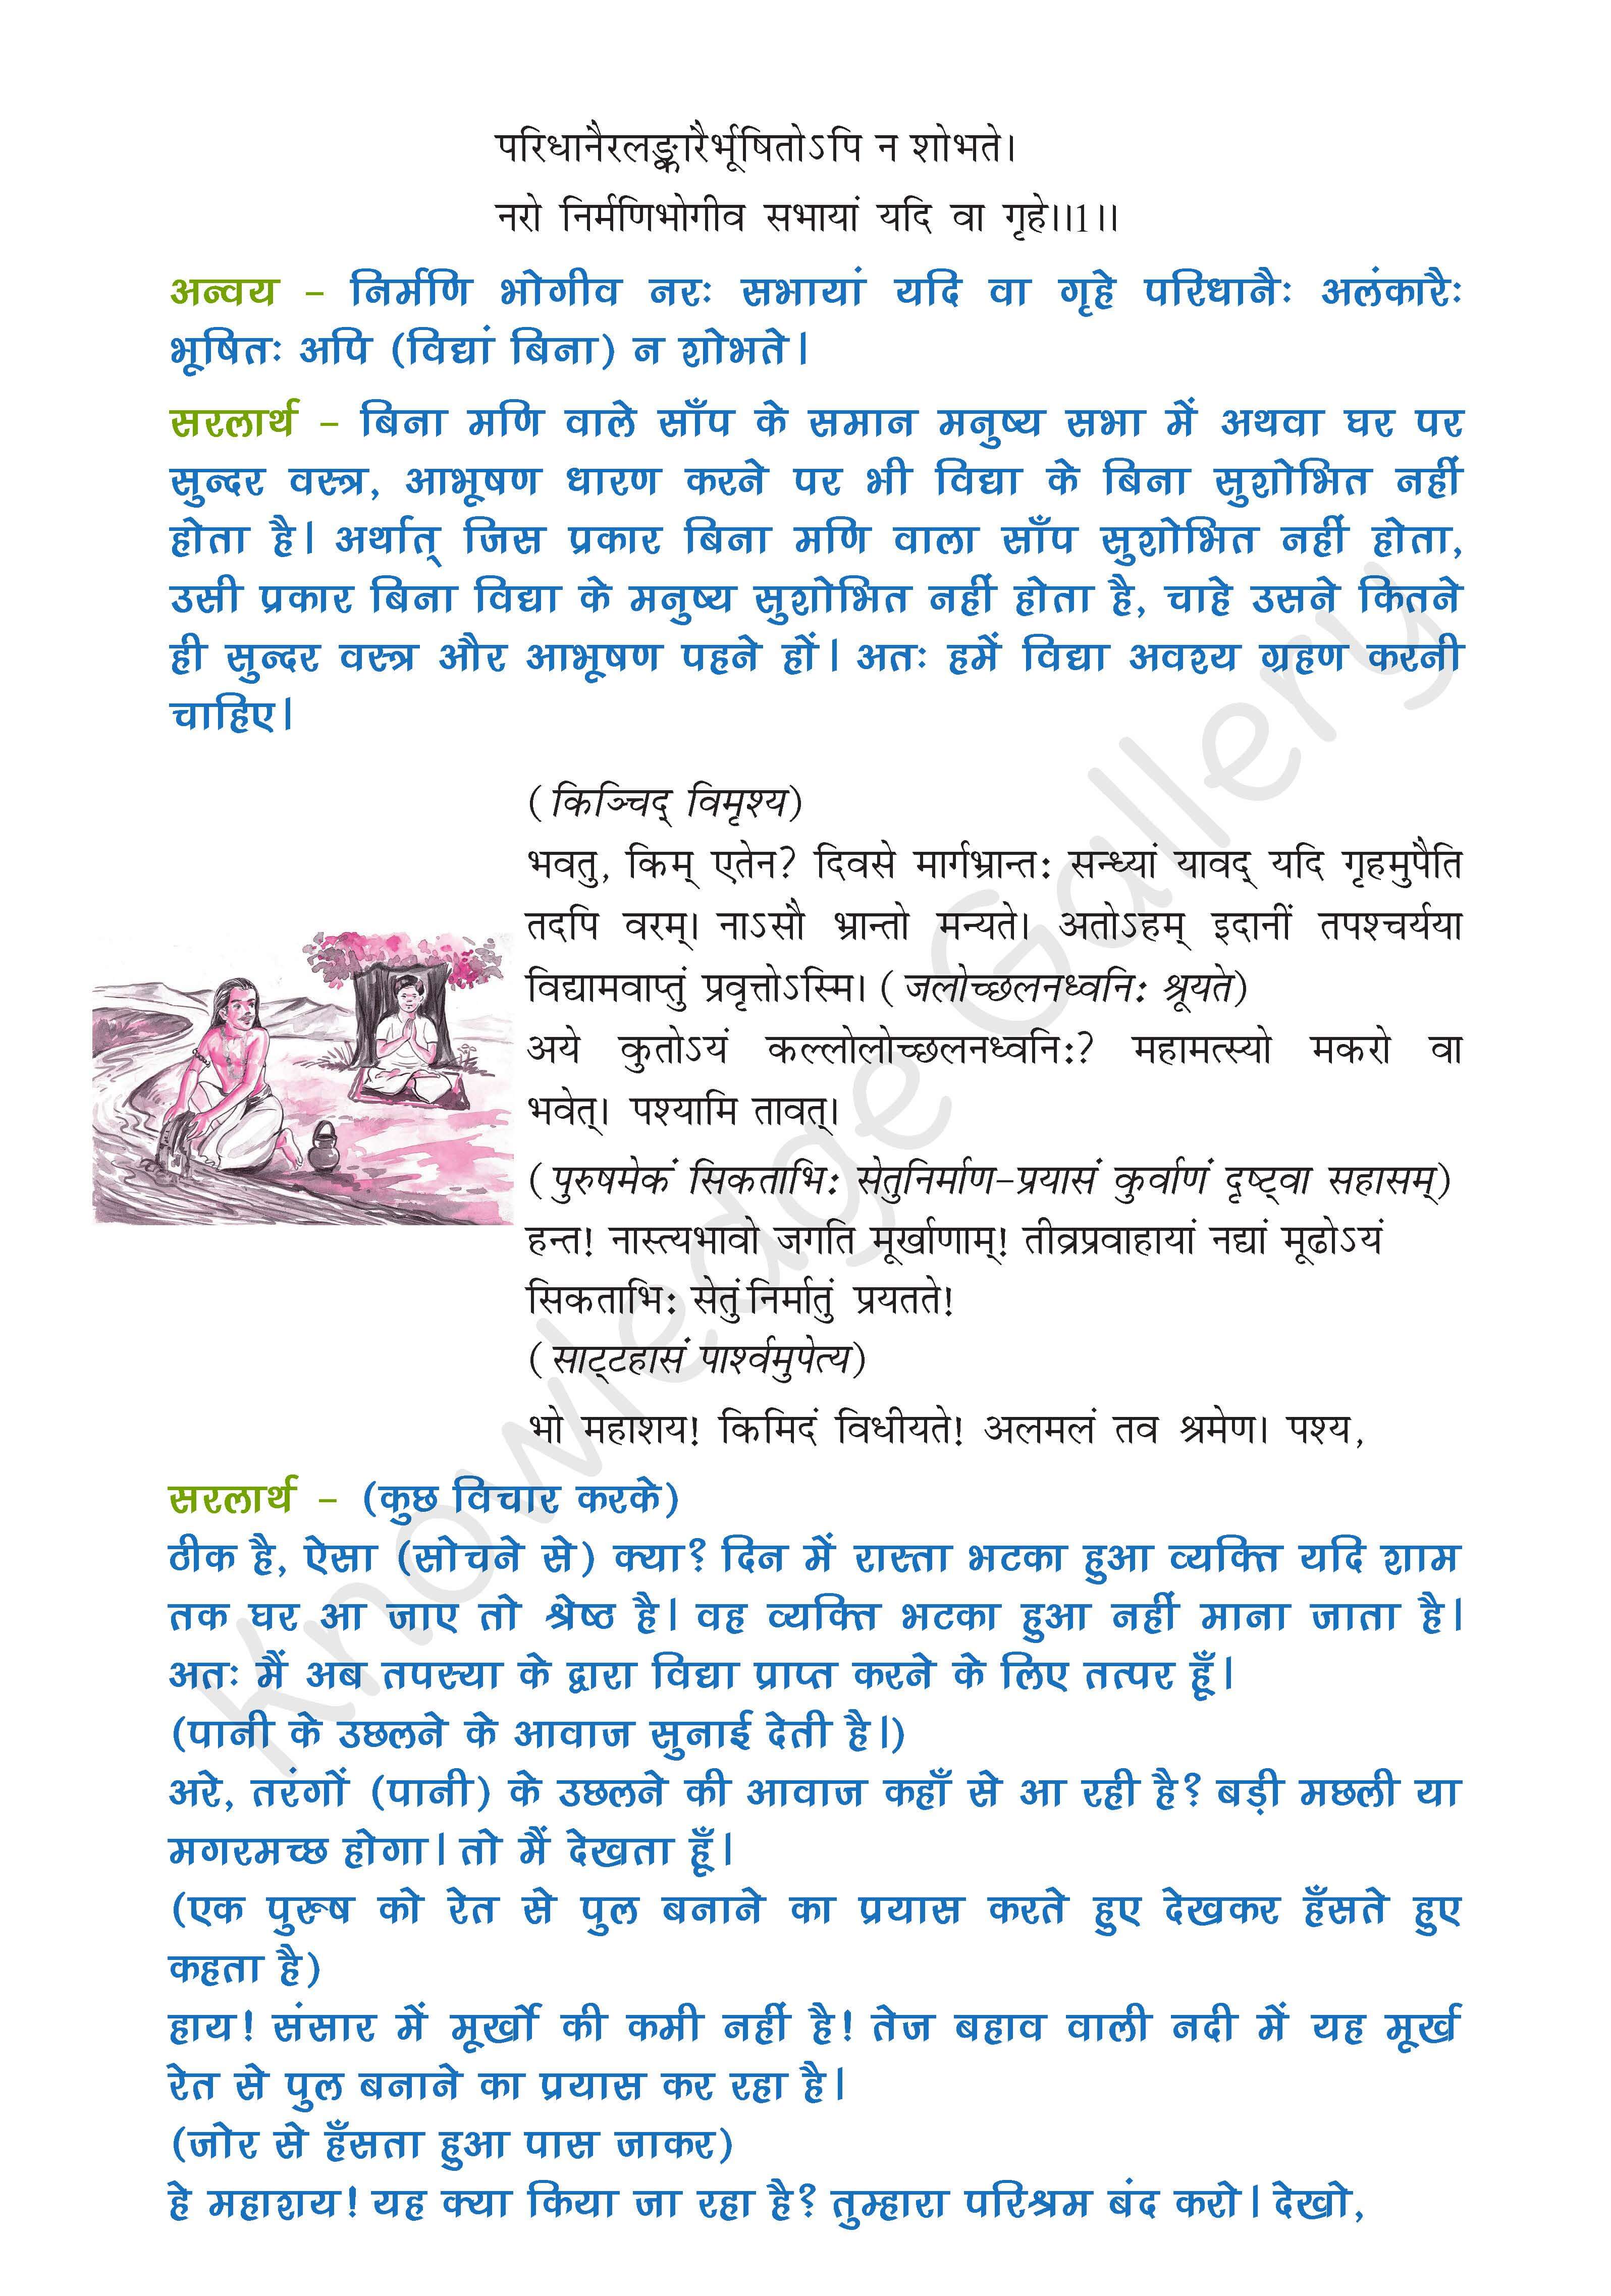 NCERT Solution For Class 9 Sanskrit Chapter 7 part 2